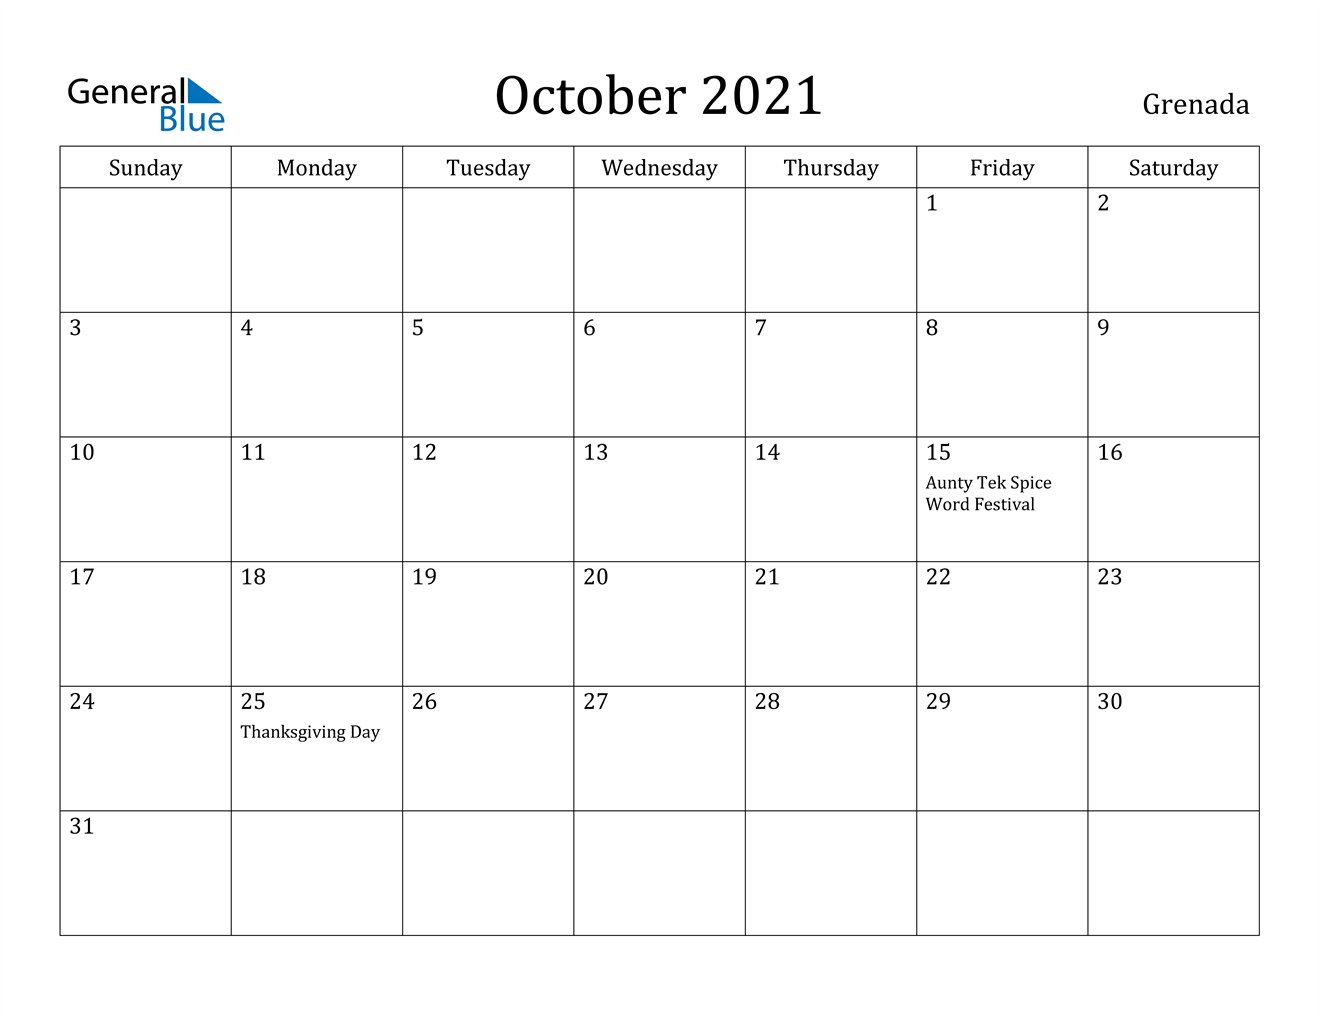 October 2021 Calendar - Grenada